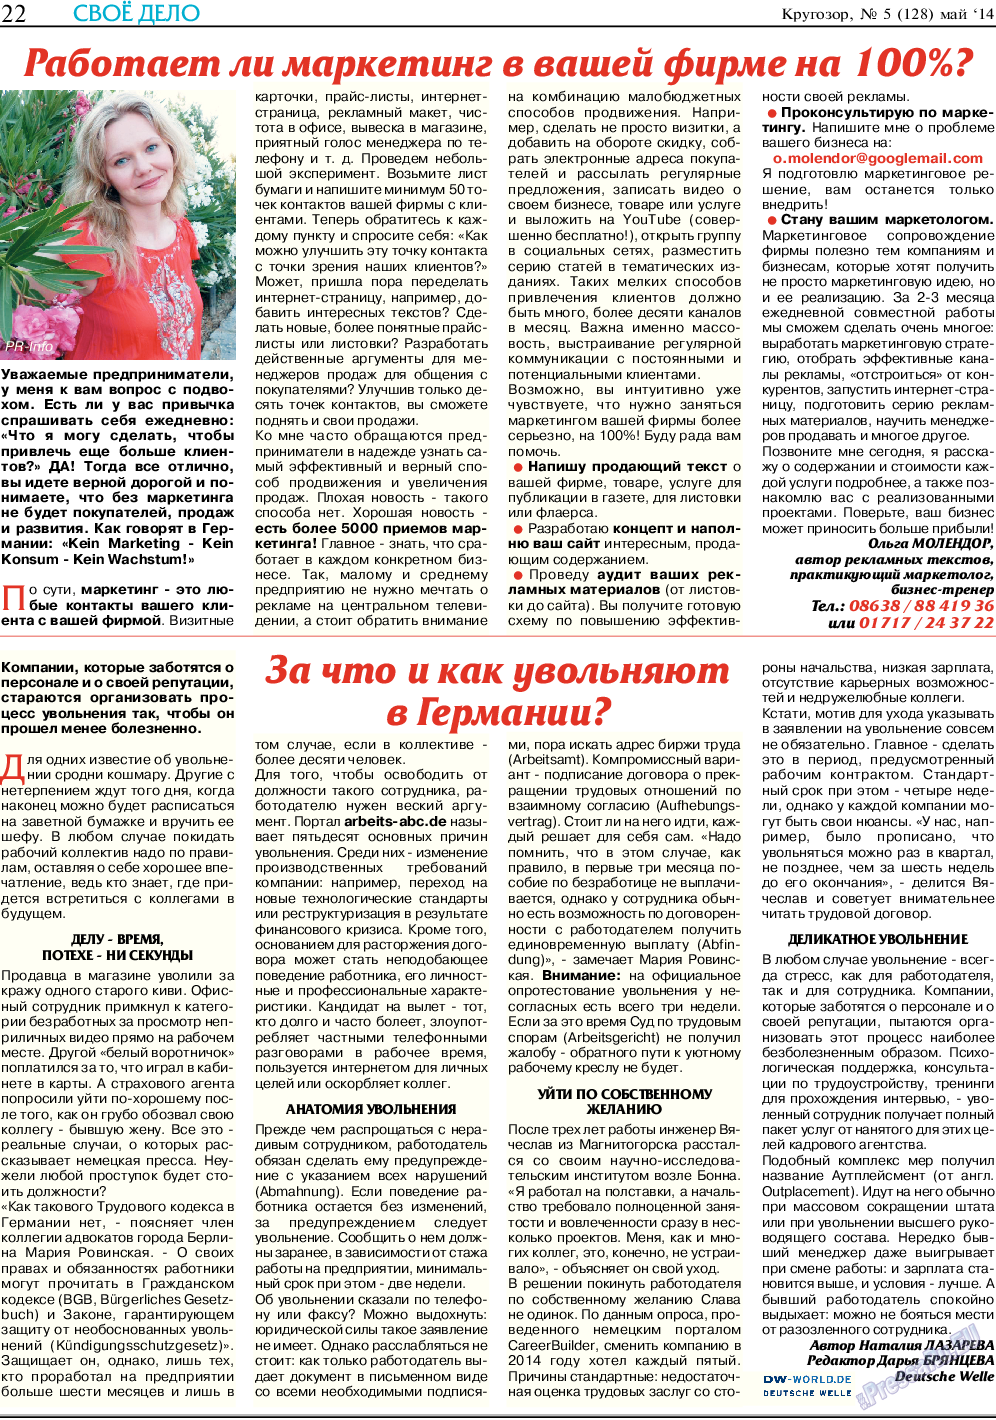 Кругозор, газета. 2014 №5 стр.22